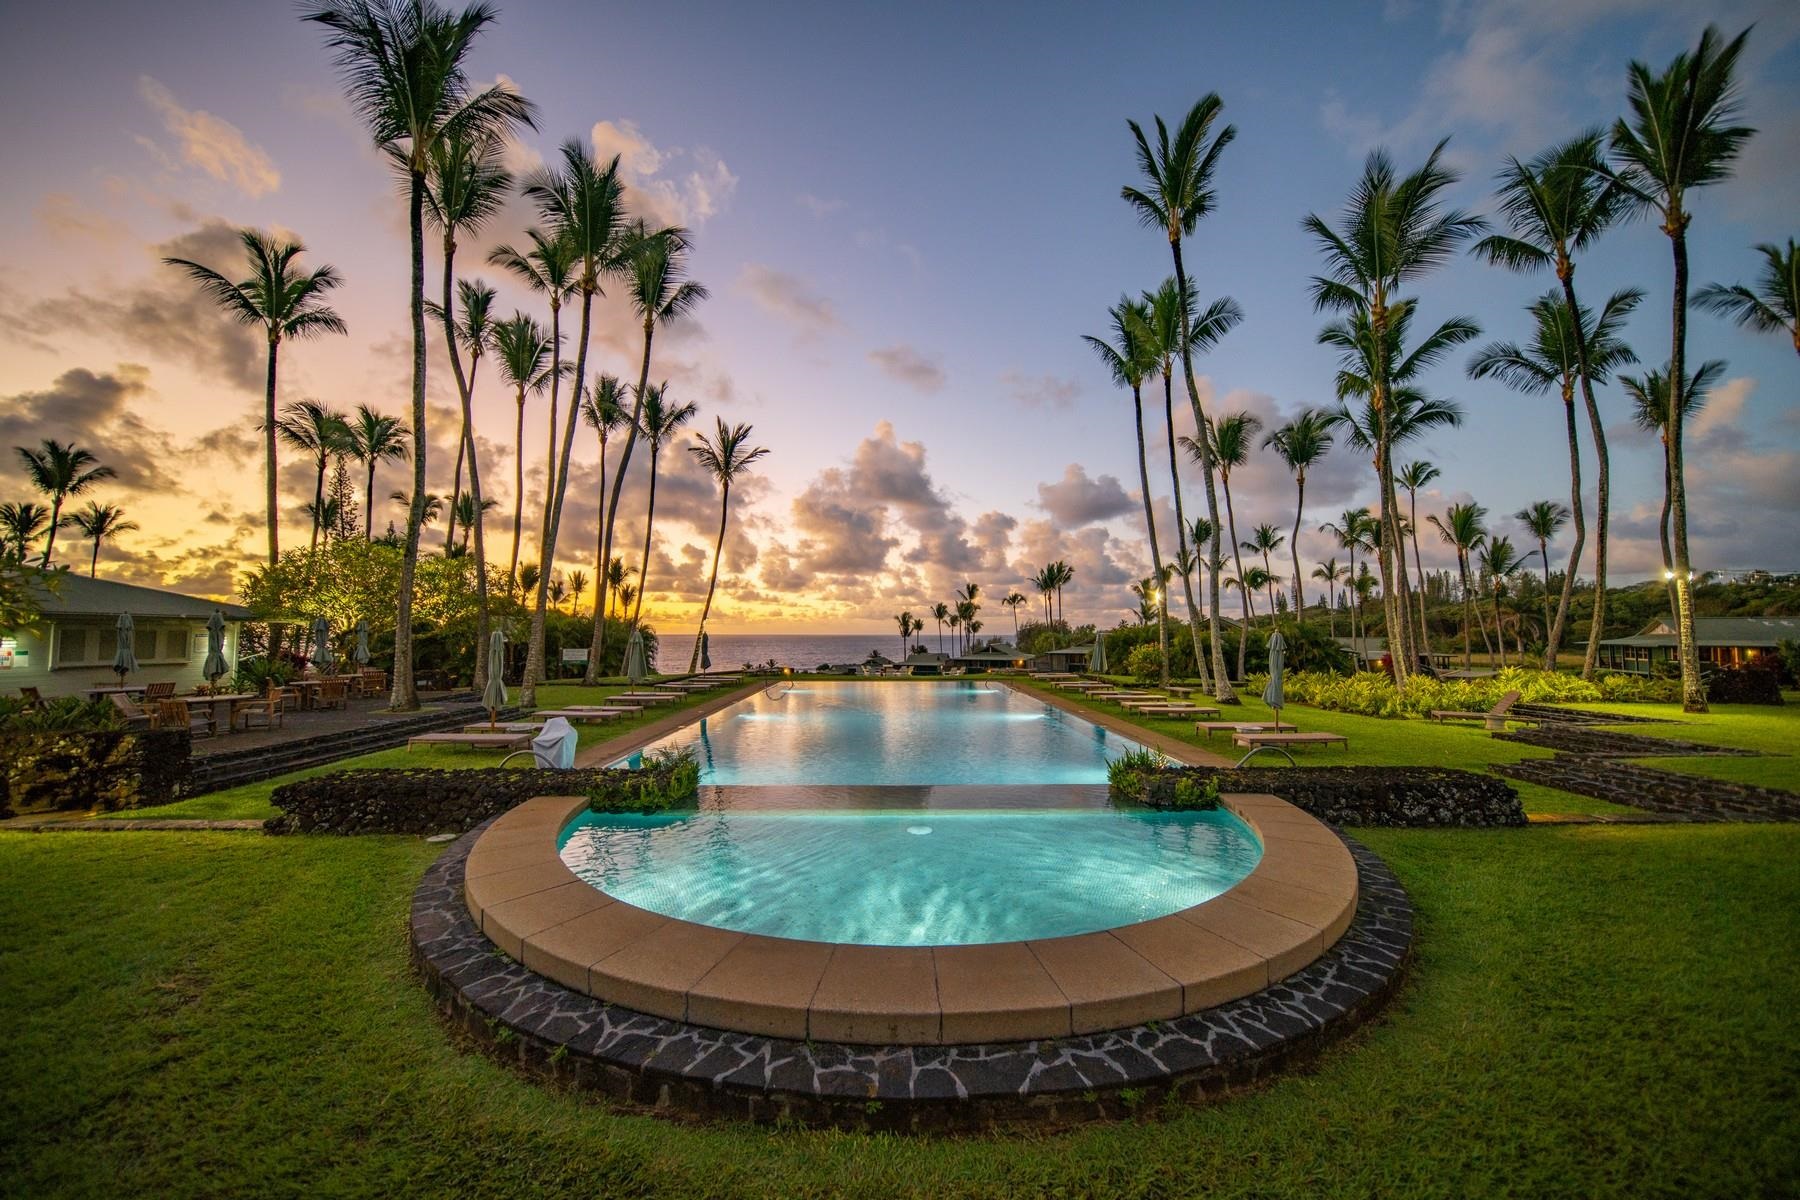 Hotel Hana-Maui Condominium condo # 101, Hana, Hawaii - photo 24 of 26